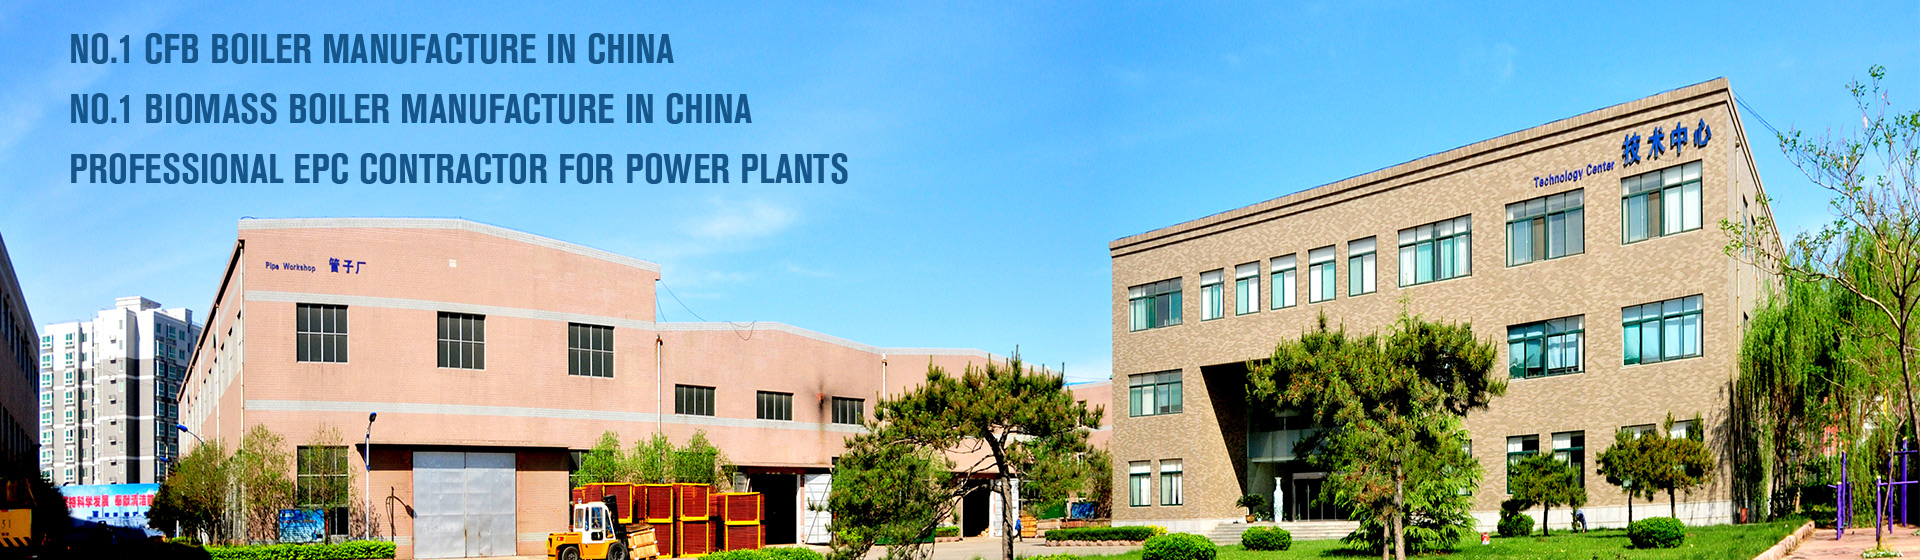 Jinan Boiler Group Co., Ltd.